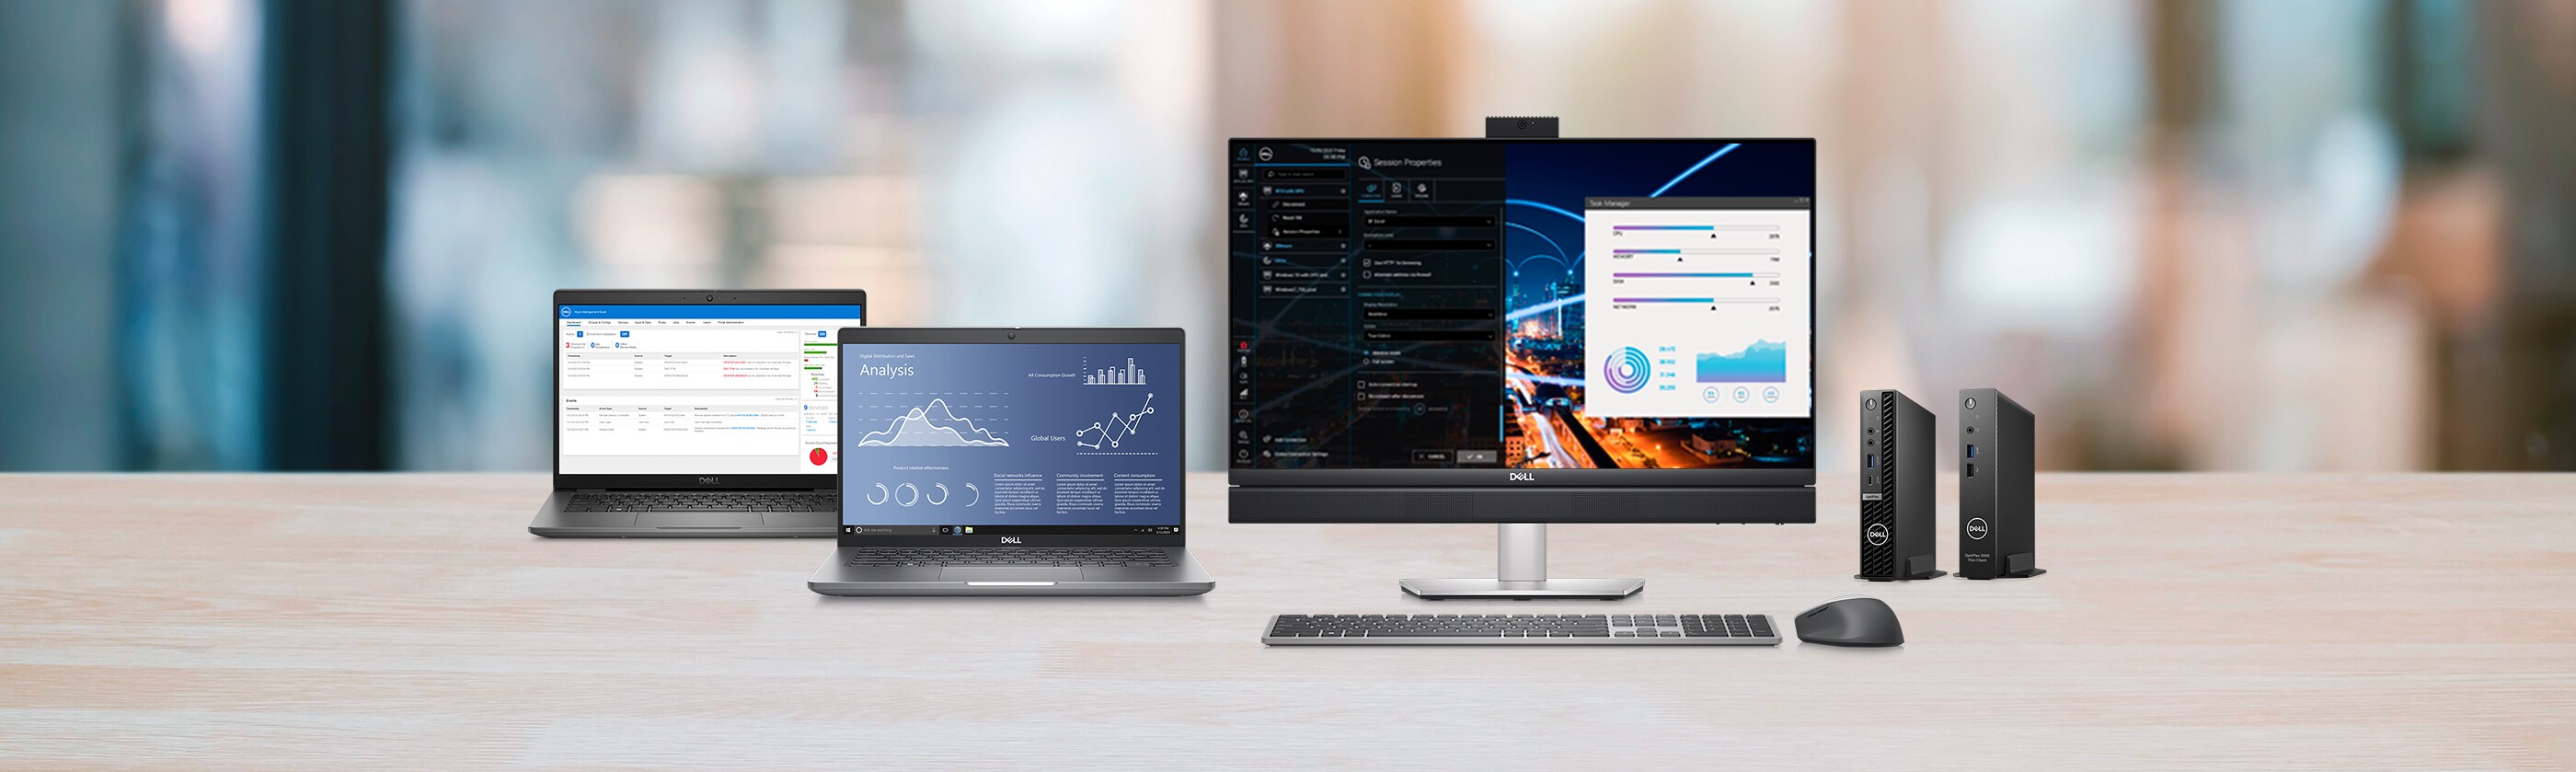 Windows® 10 IoT Enterprise : une option logicielle flexible, optimisée par Dell